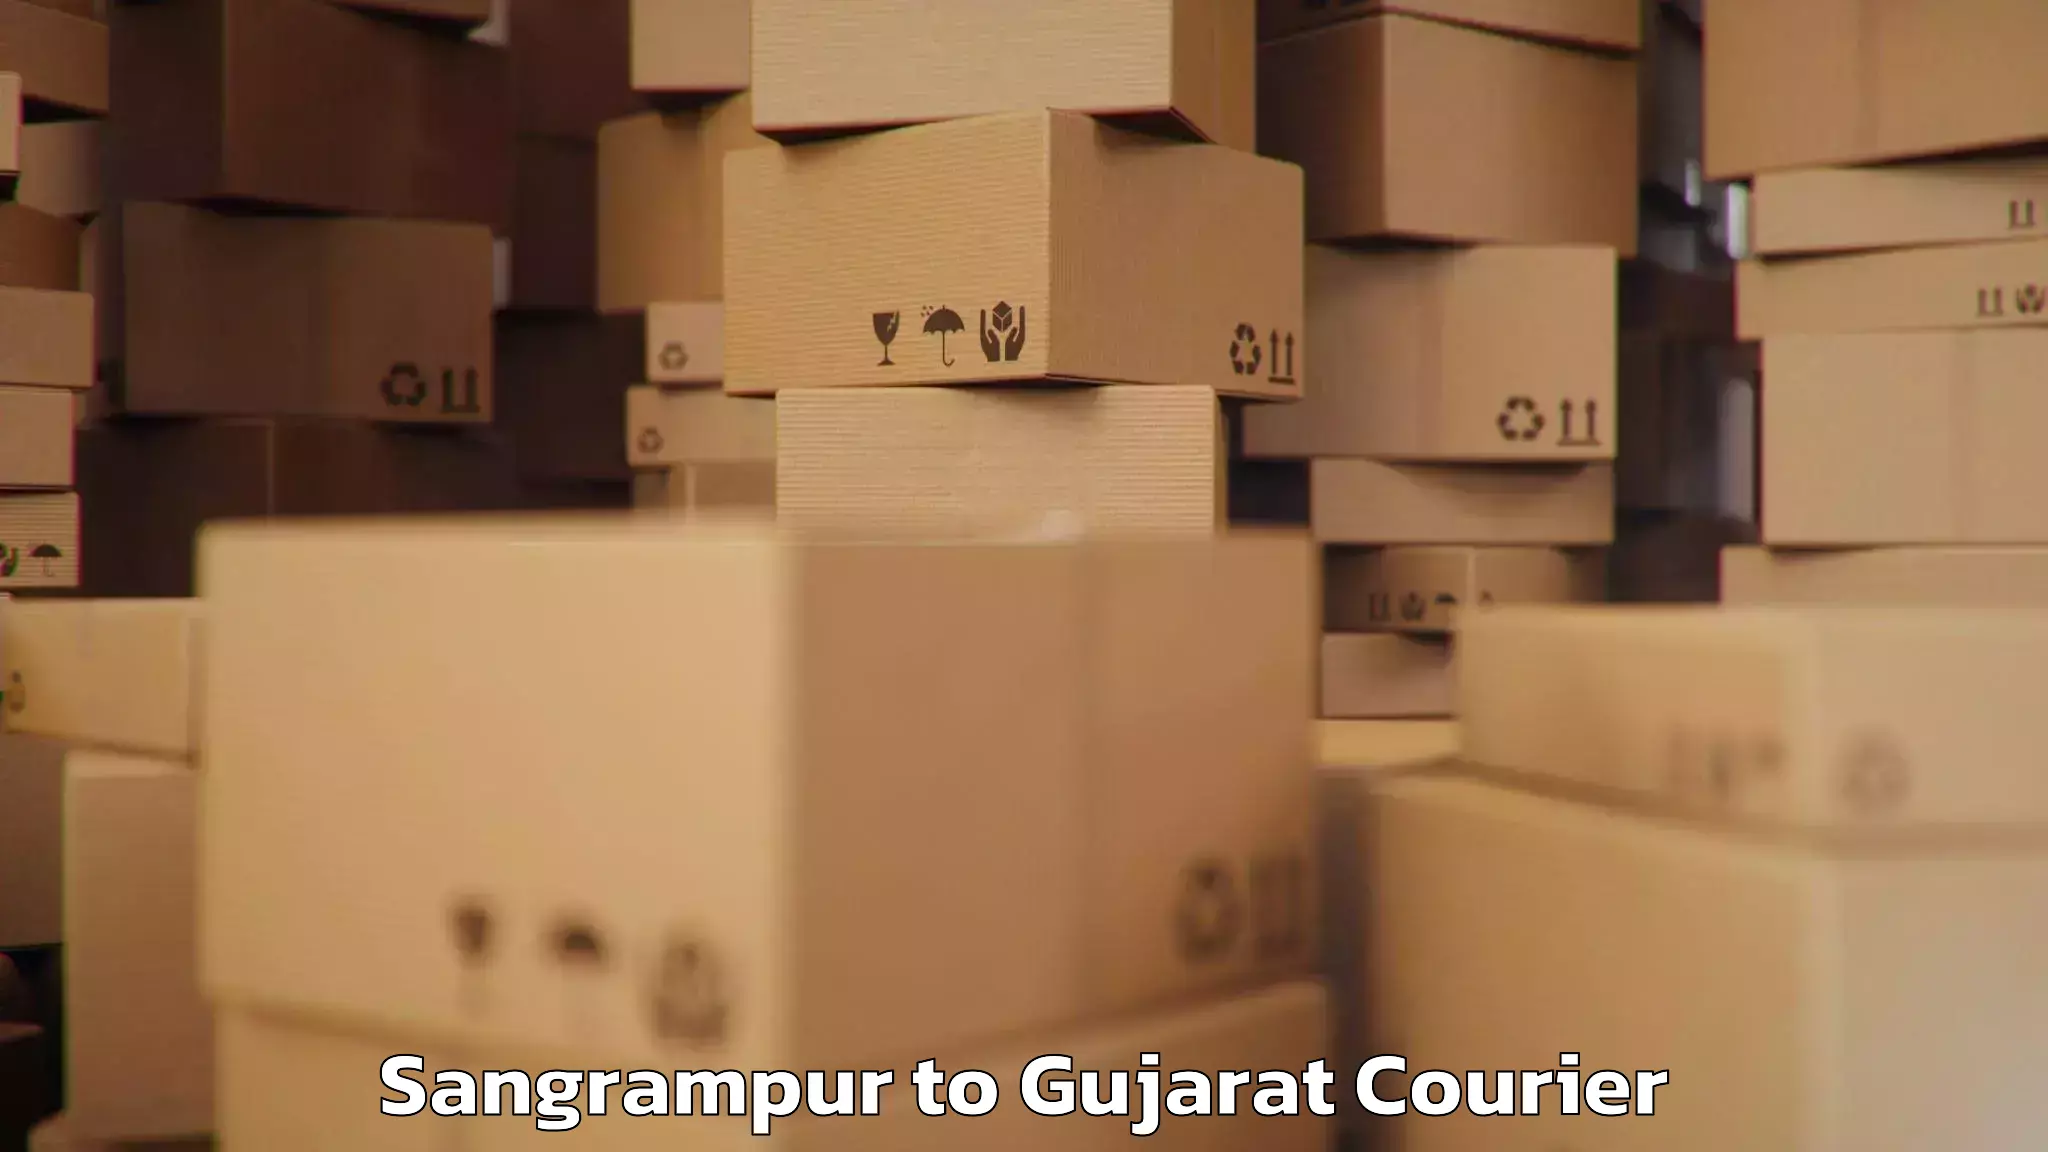 Baggage courier logistics Sangrampur to Gujarat